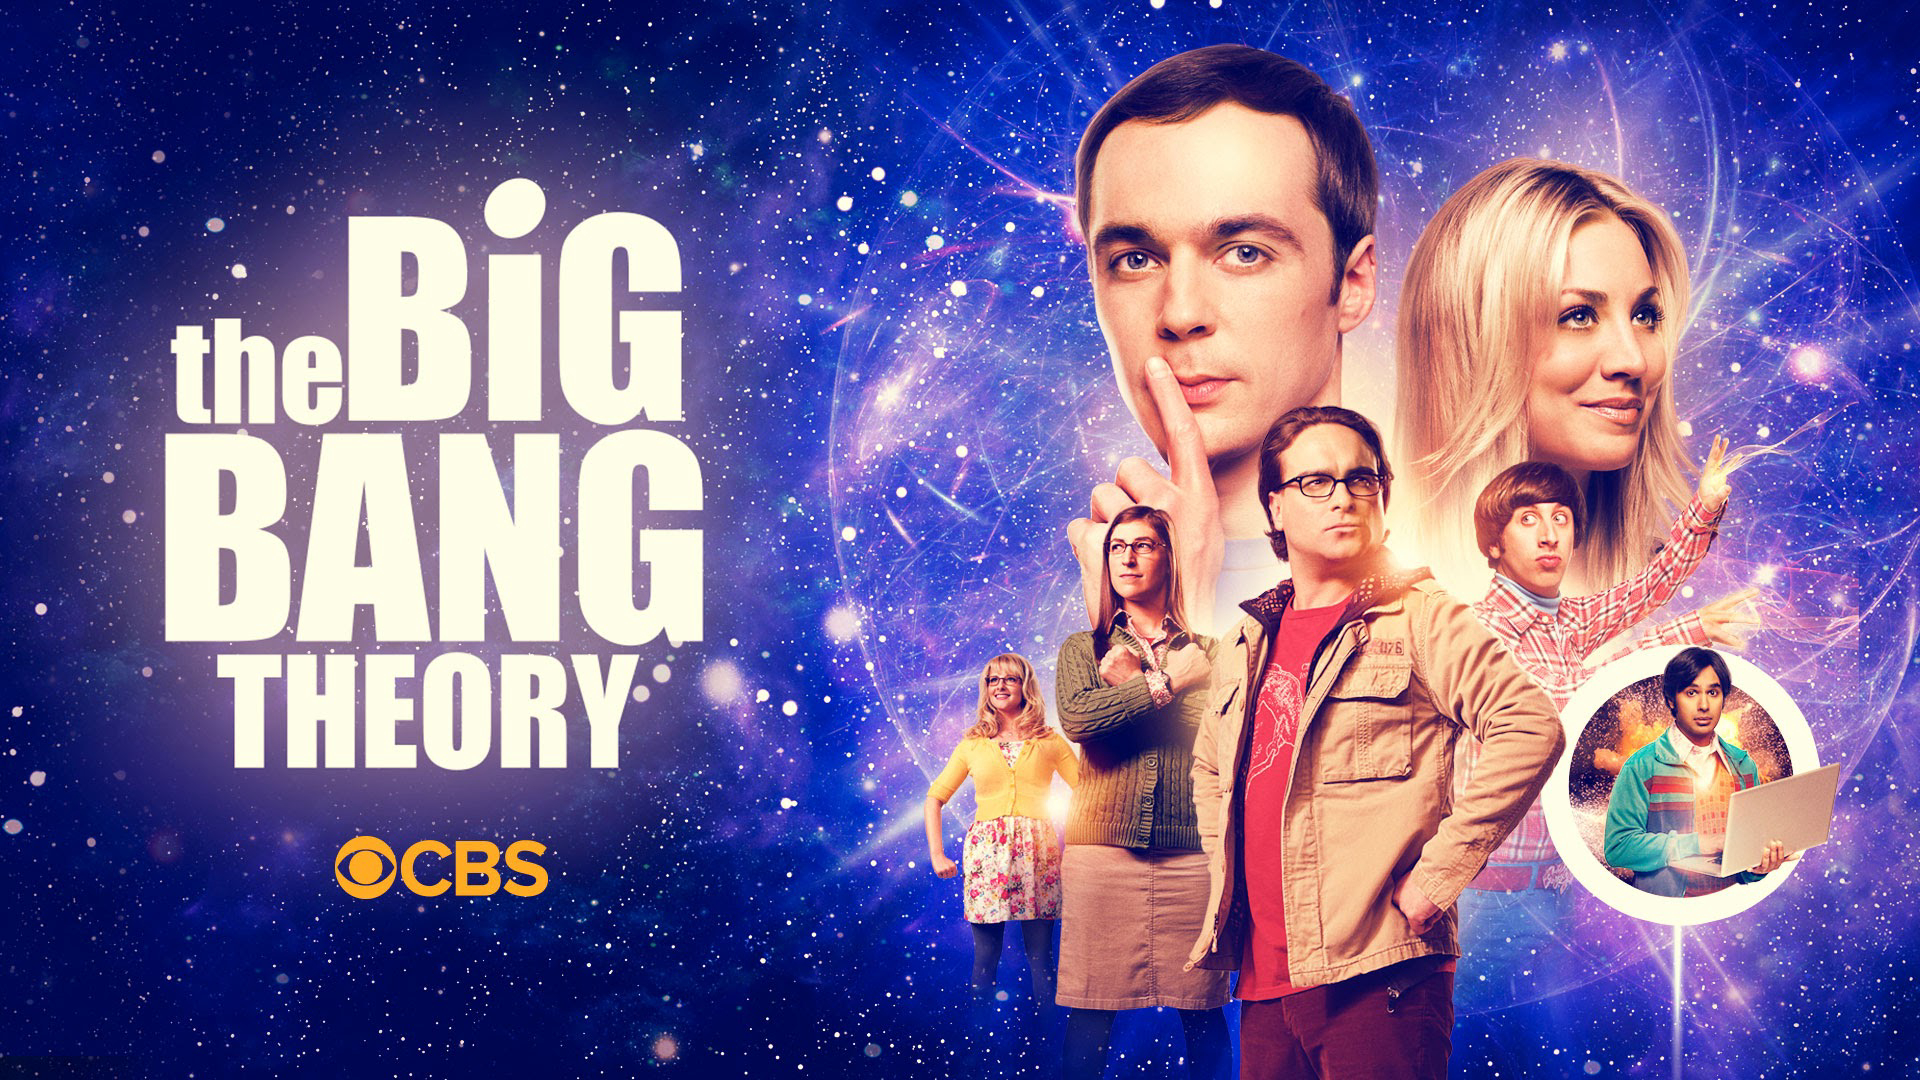 The Big Bang Theory (Season 7) / The Big Bang Theory (Season 7) (2013)